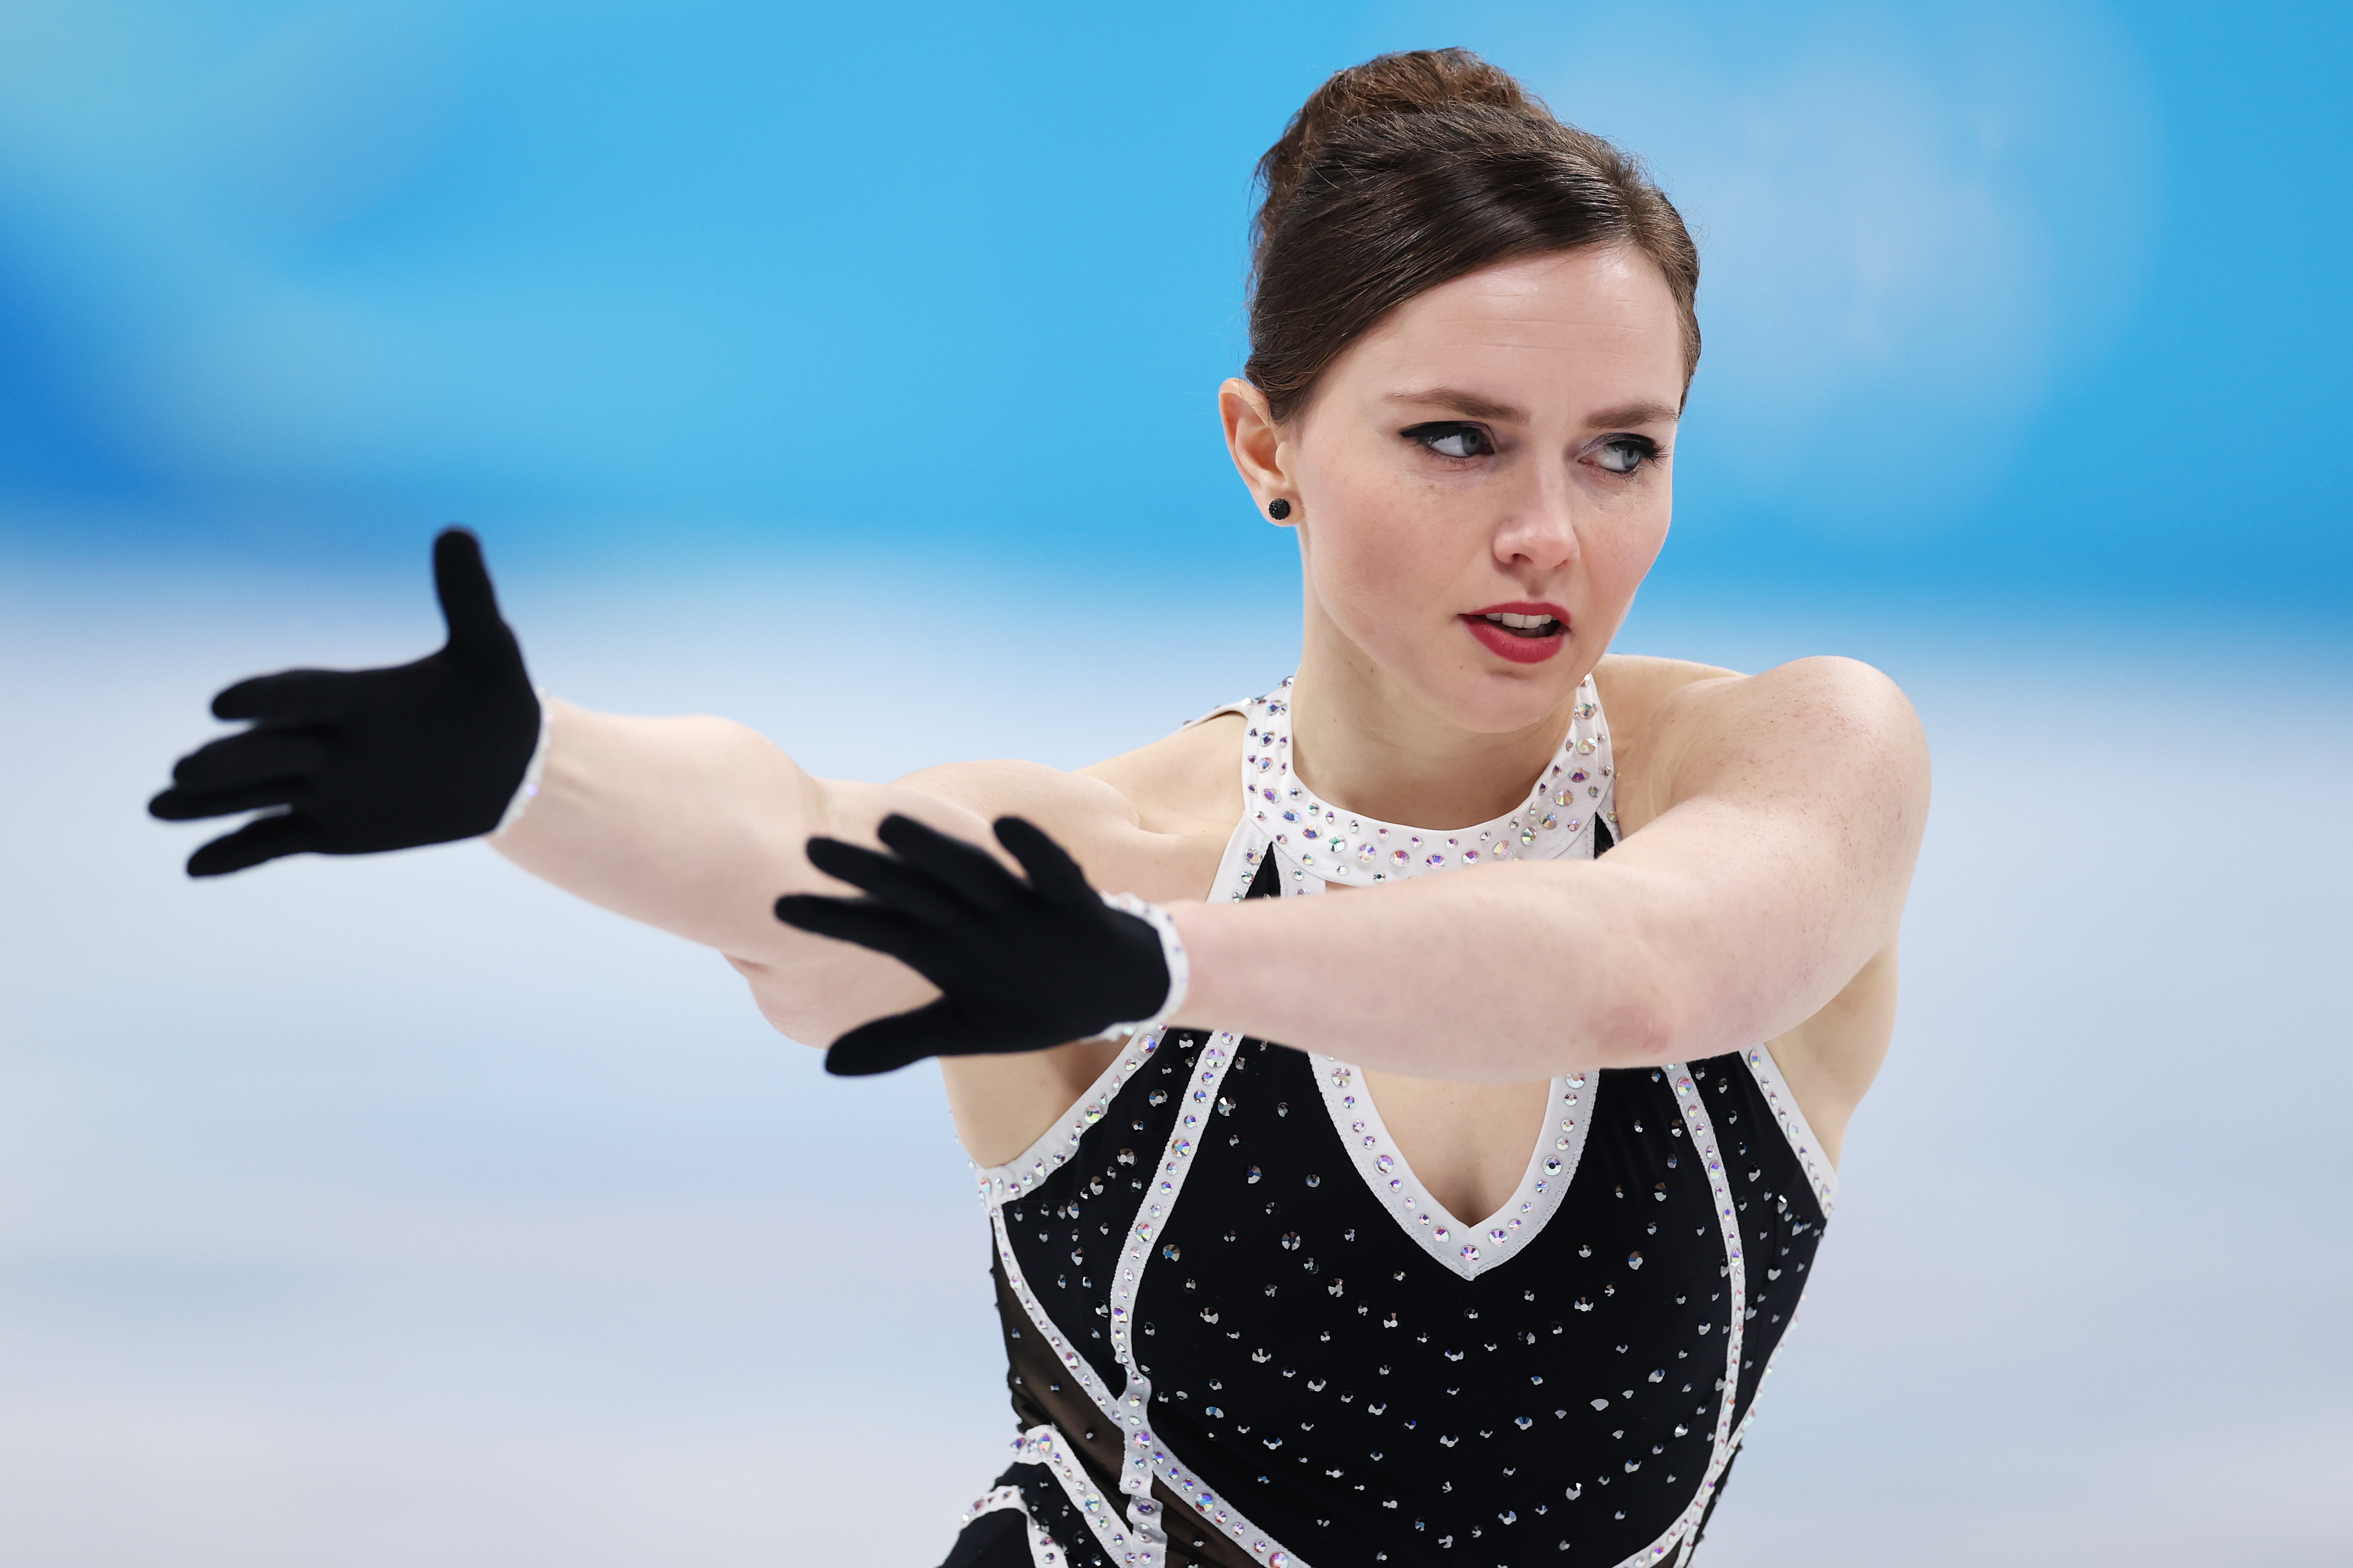 josefina taljegård woman pants olympics figure skating